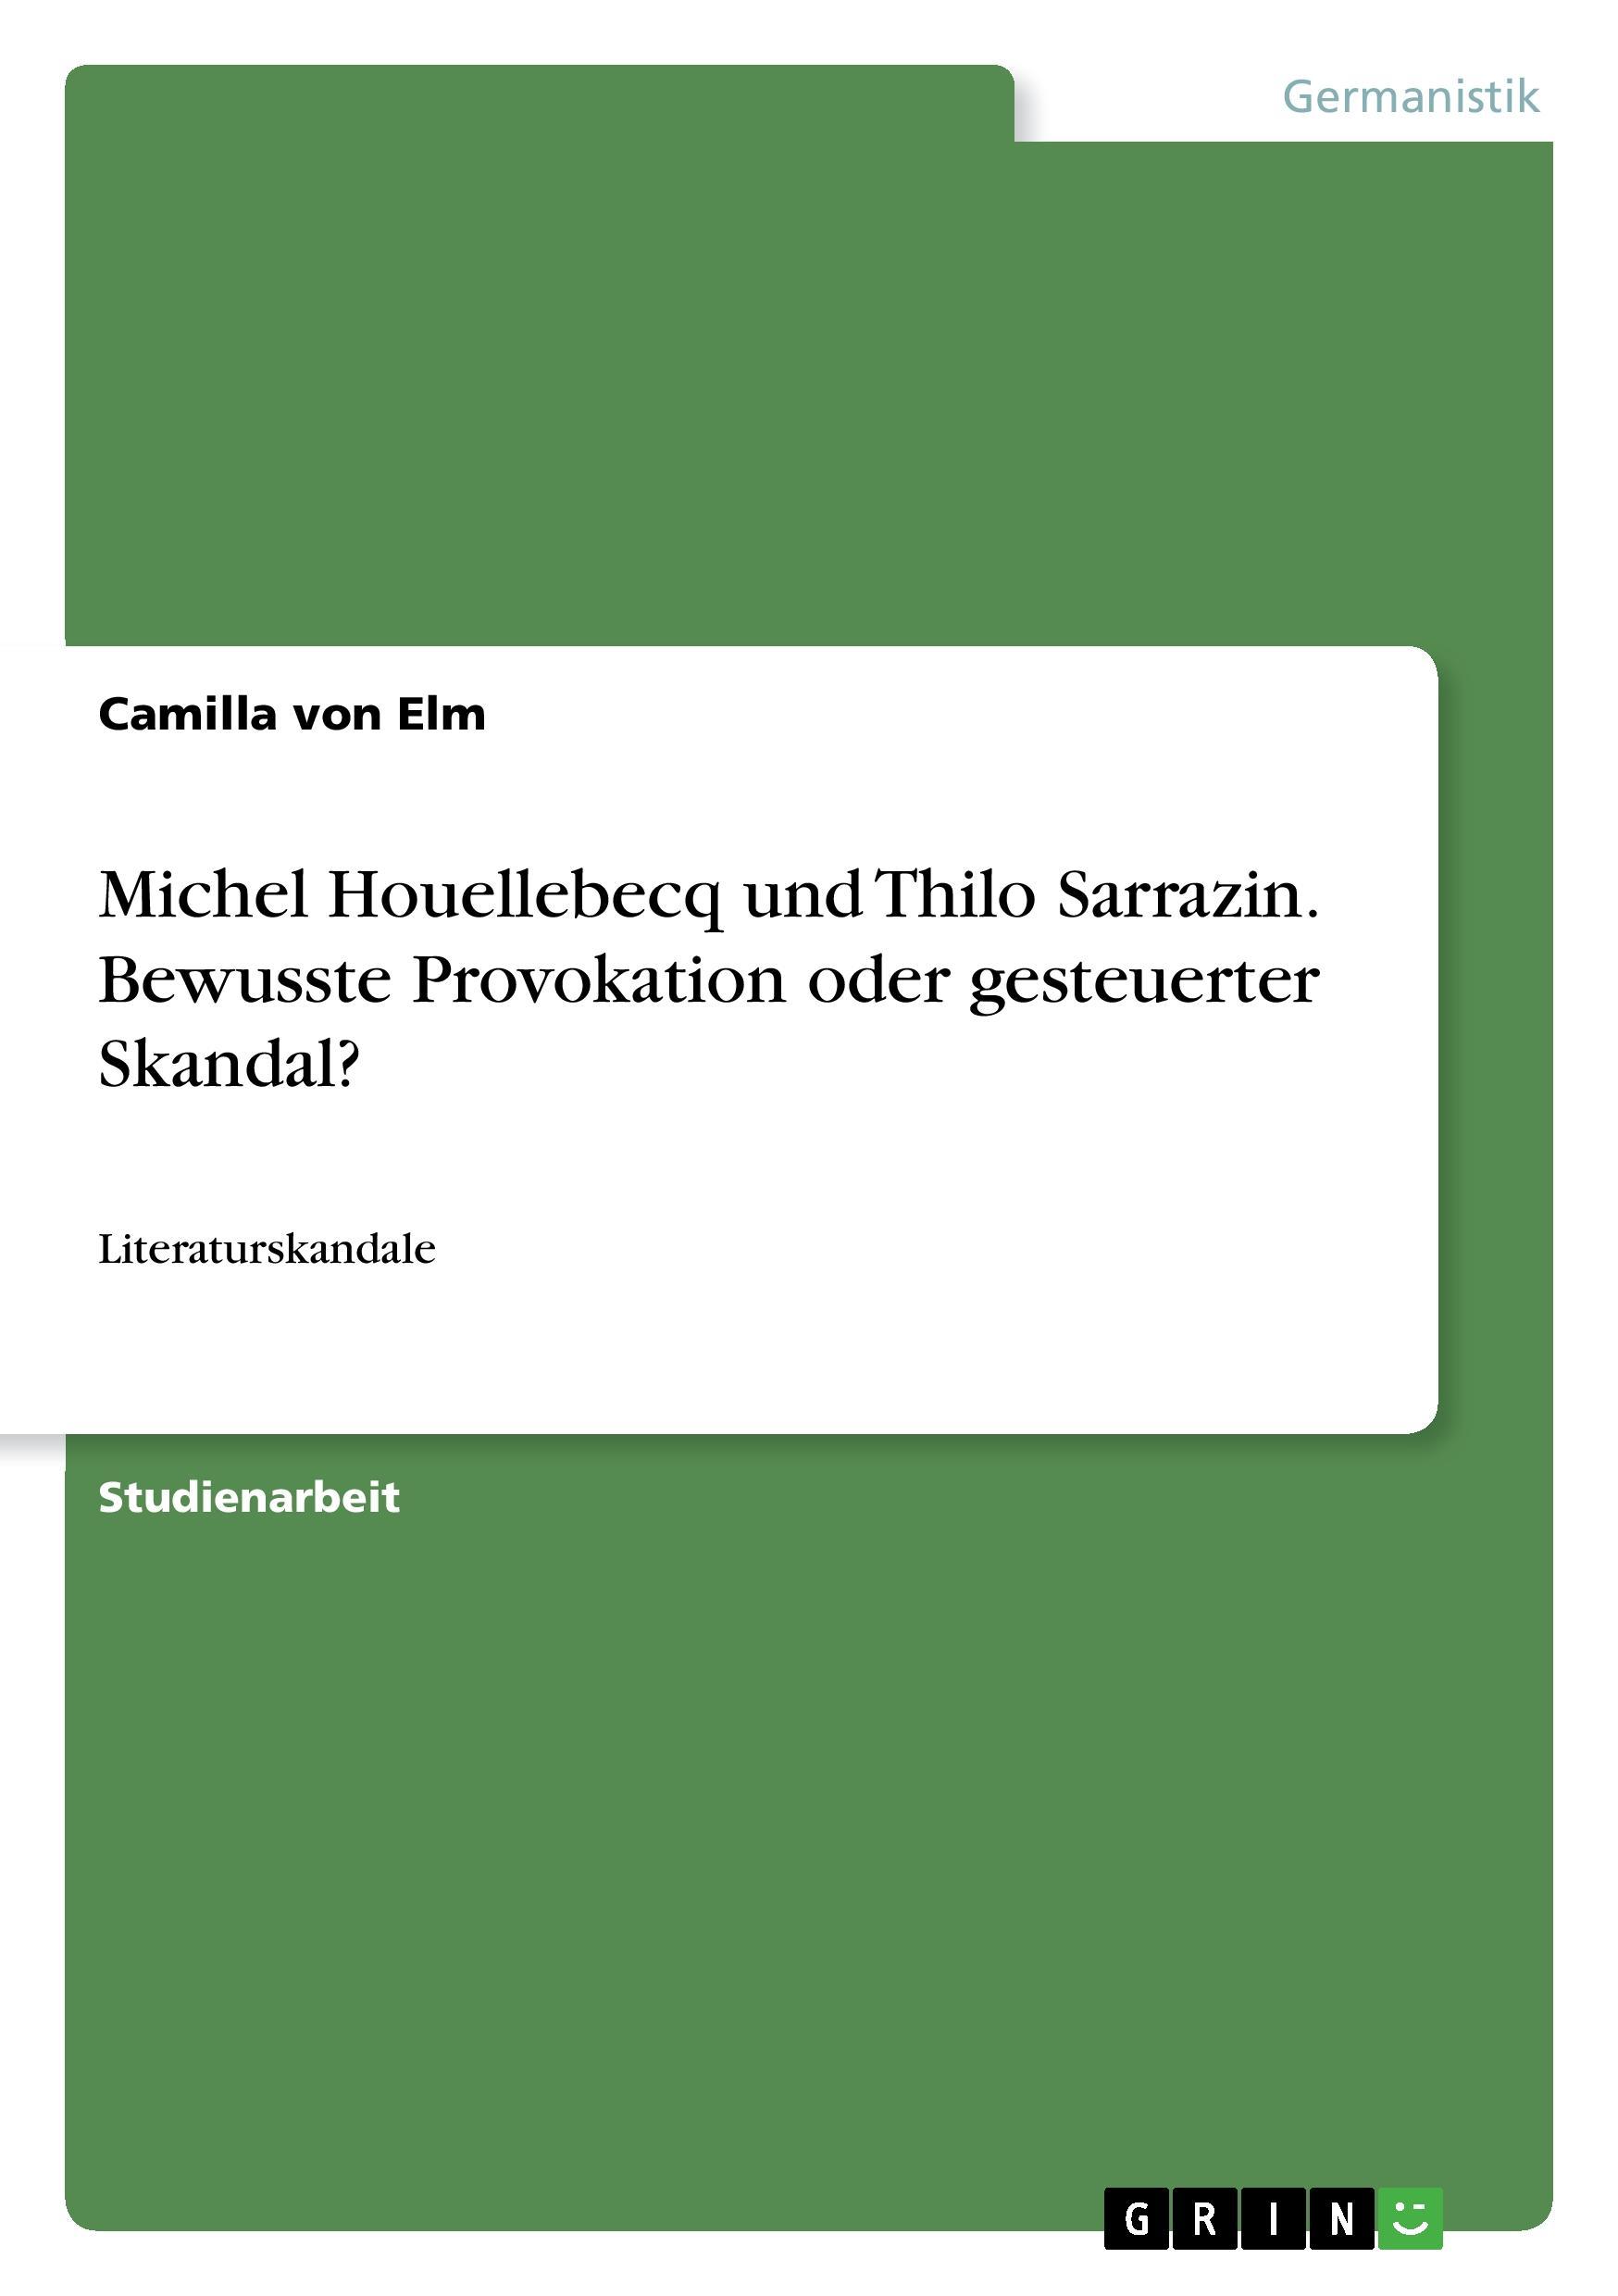 Michel Houellebecq und Thilo Sarrazin. Bewusste Provokation oder gesteuerter Skandal? - Elm, Camilla von